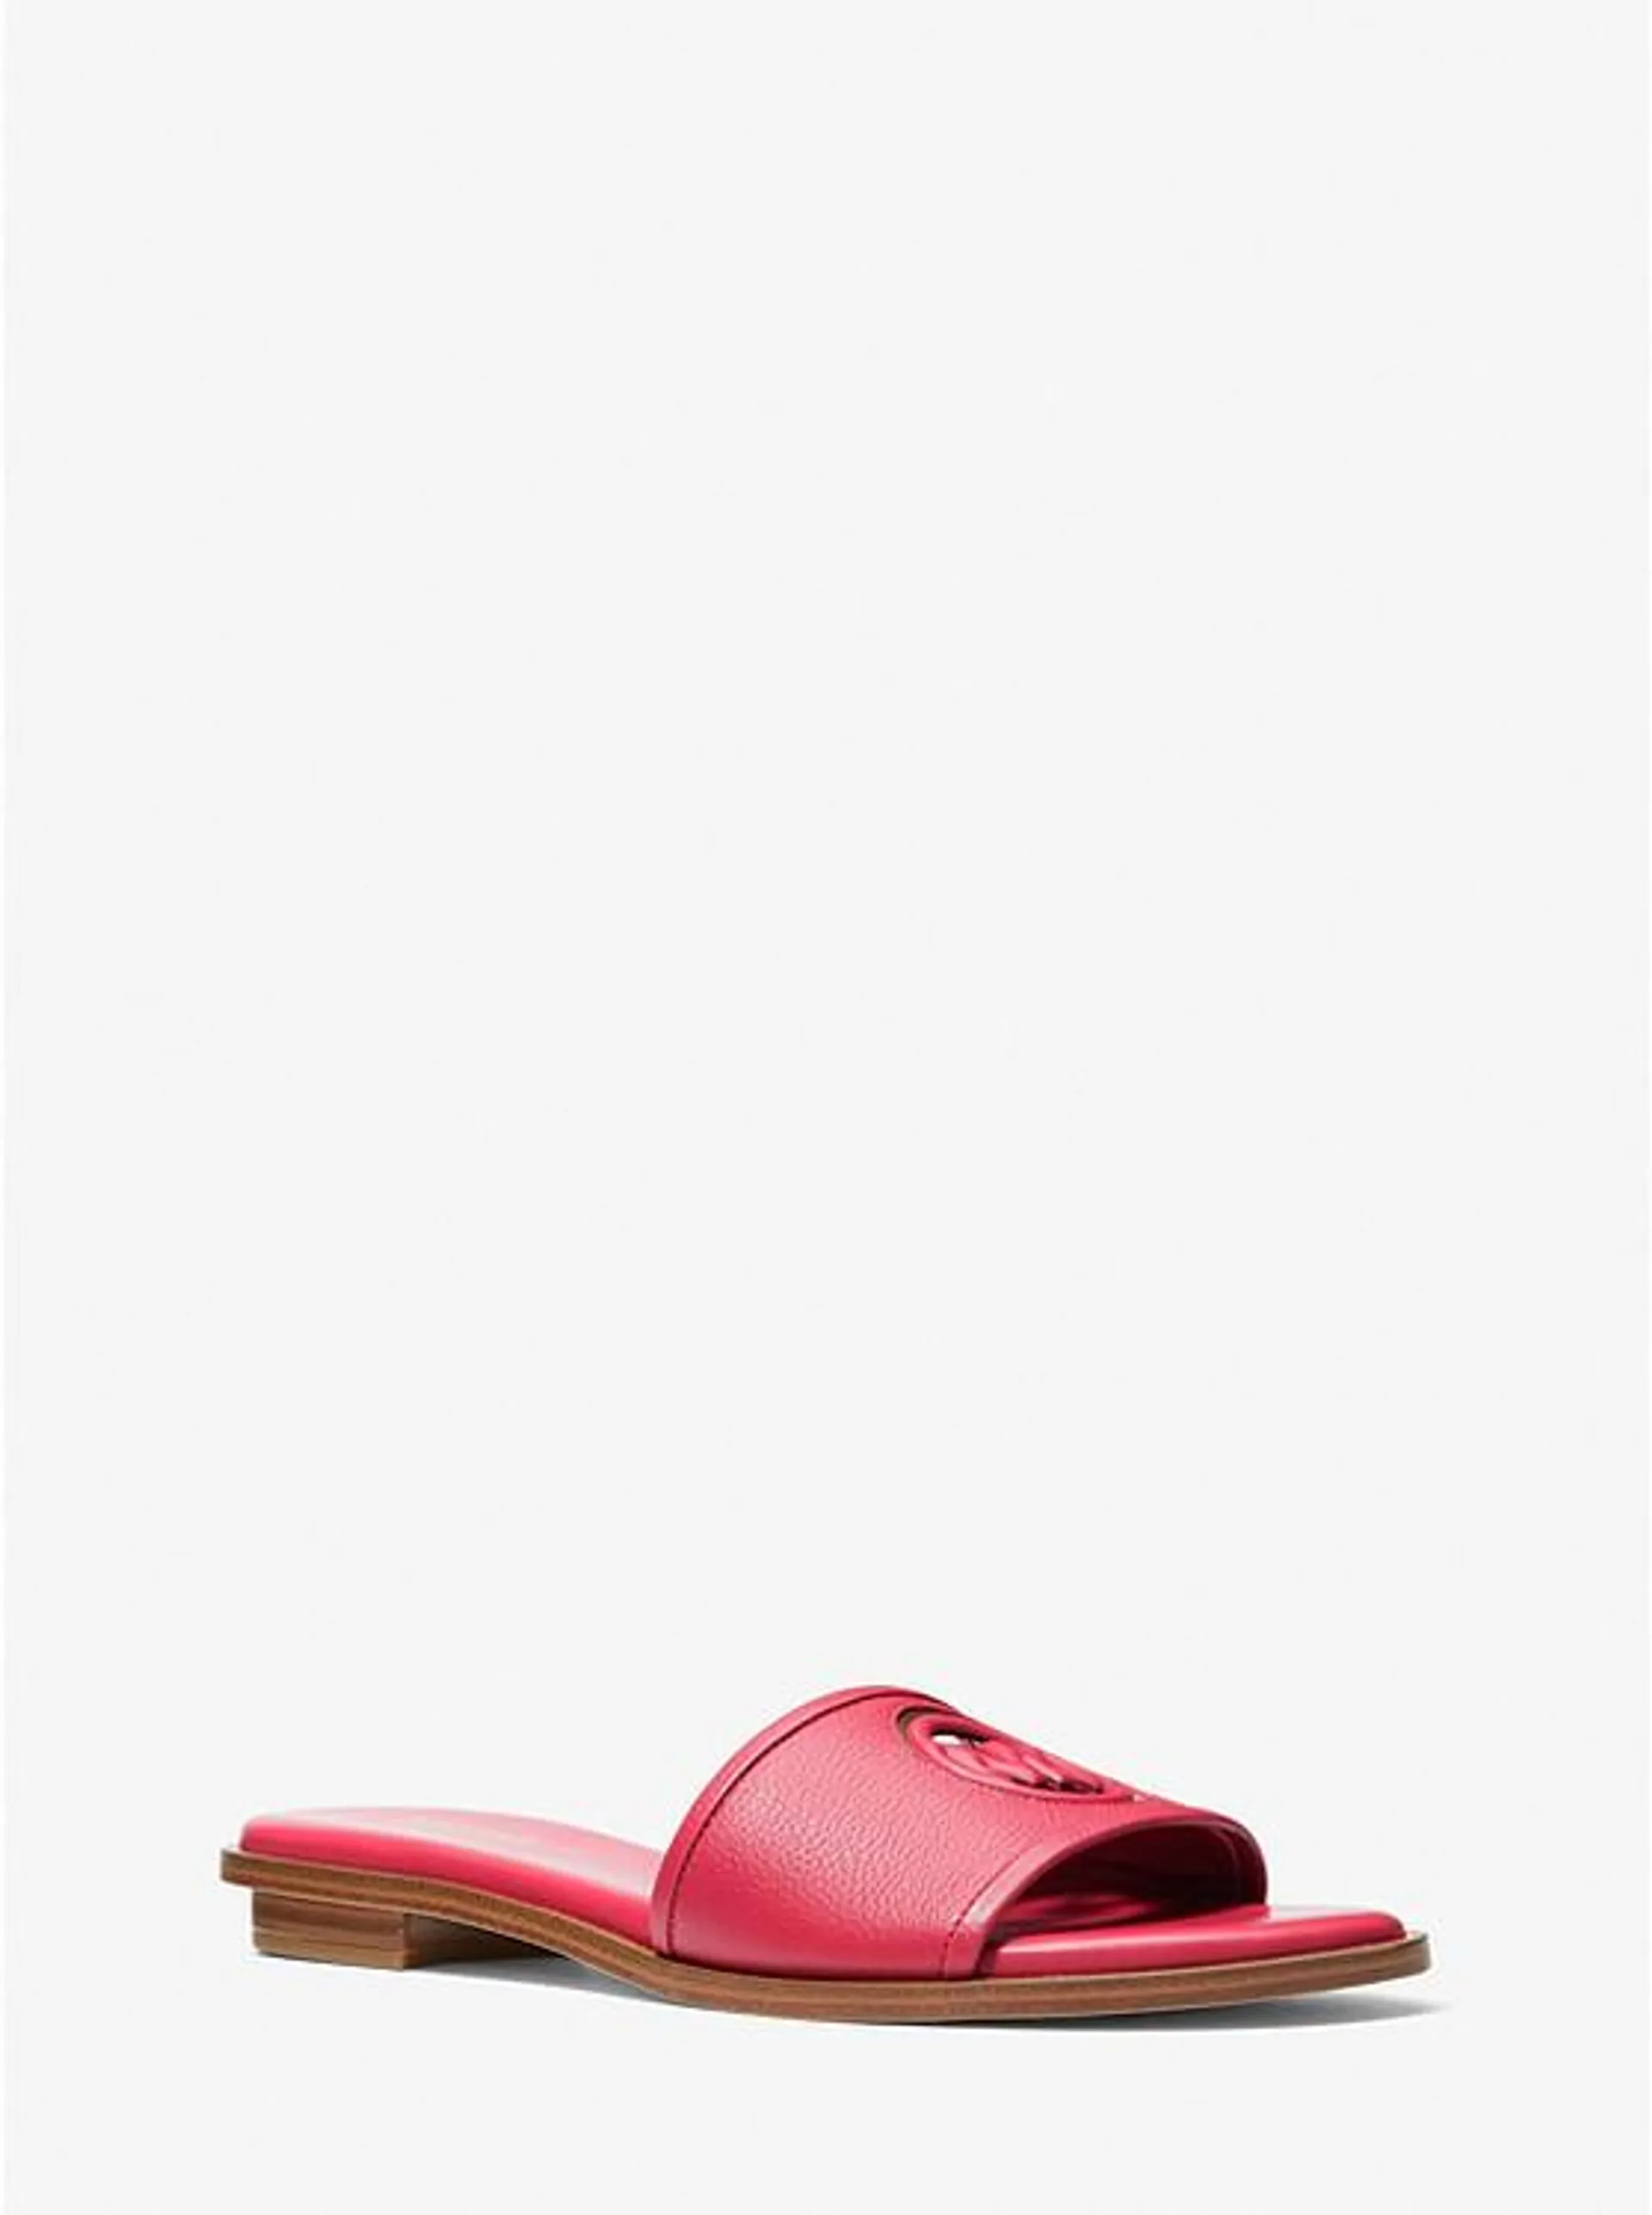 Deanna Cutout Leather Slide Sandal